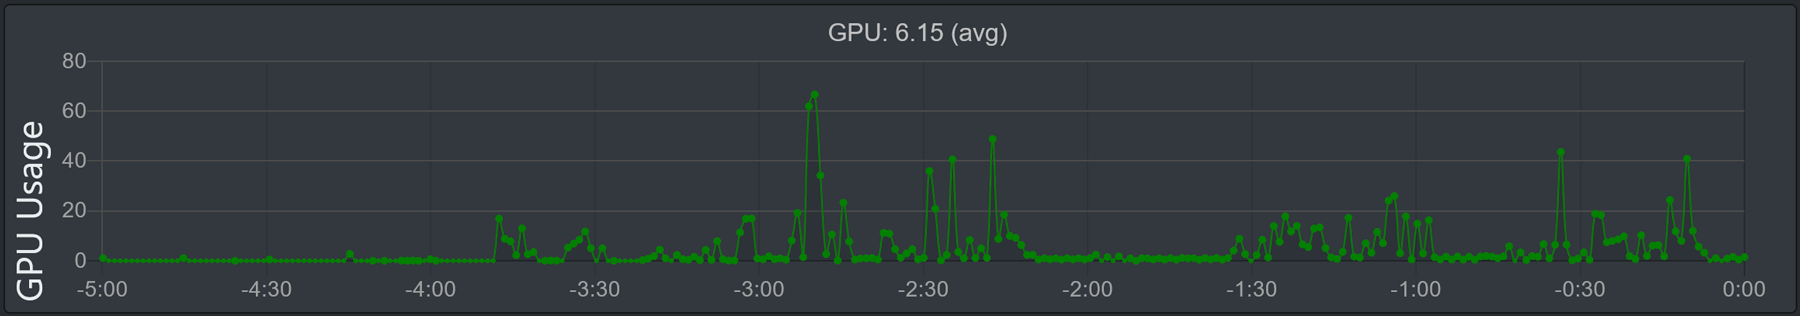 Billede af grafen 'GPU Usage'